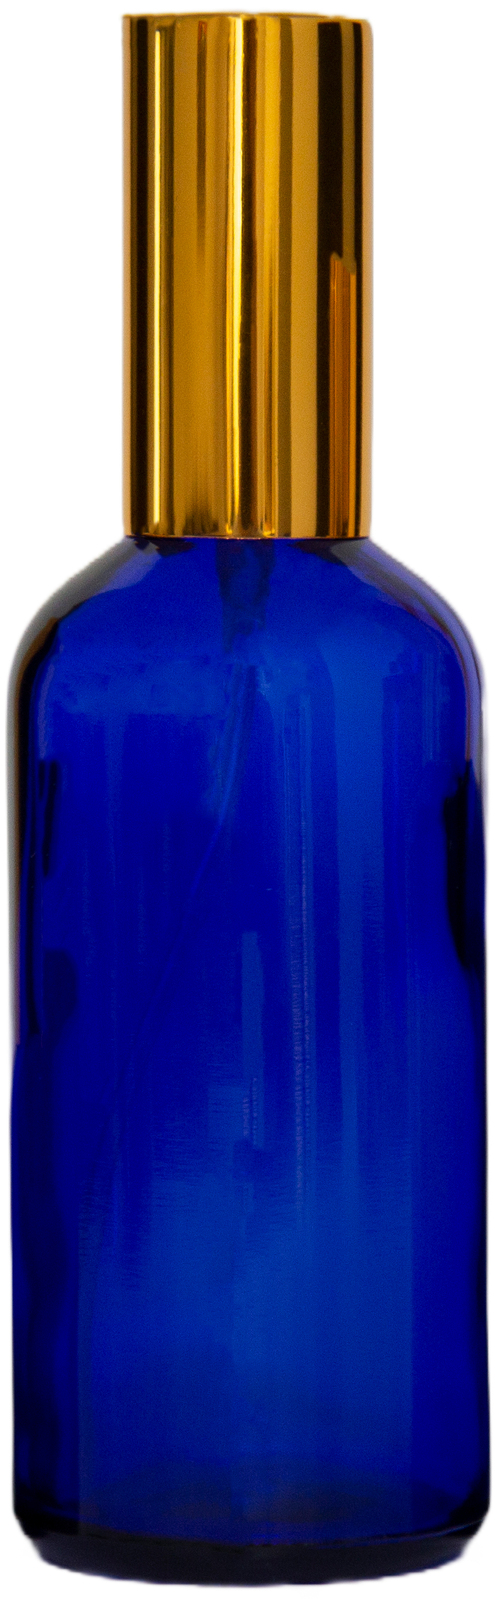 100ml Cobalt Blue Glass Spray Bottle Gold Aluminium Top